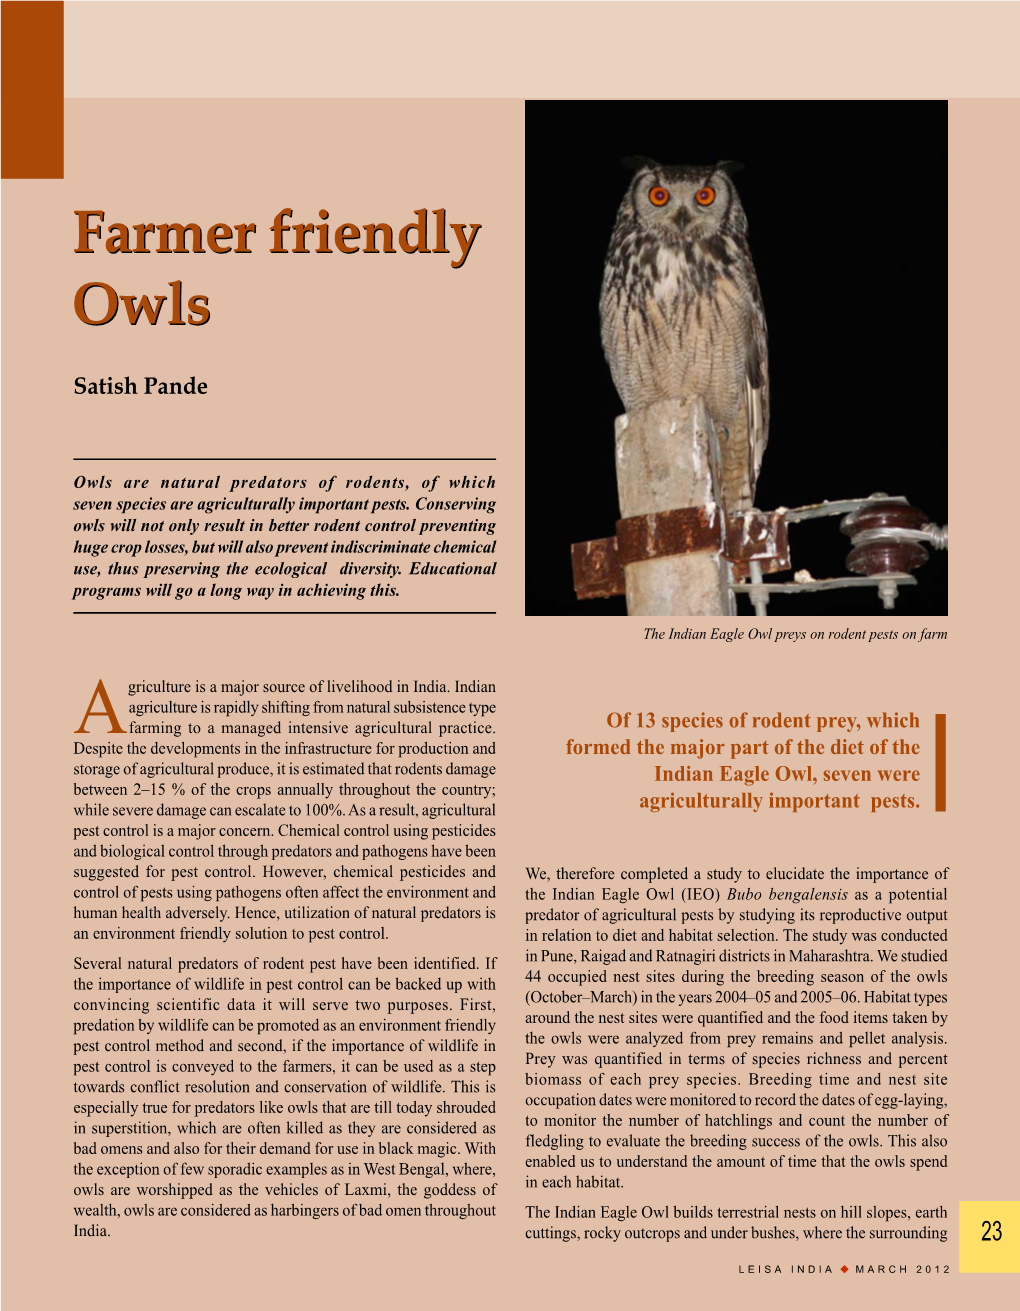 Farmer Friendly Owls